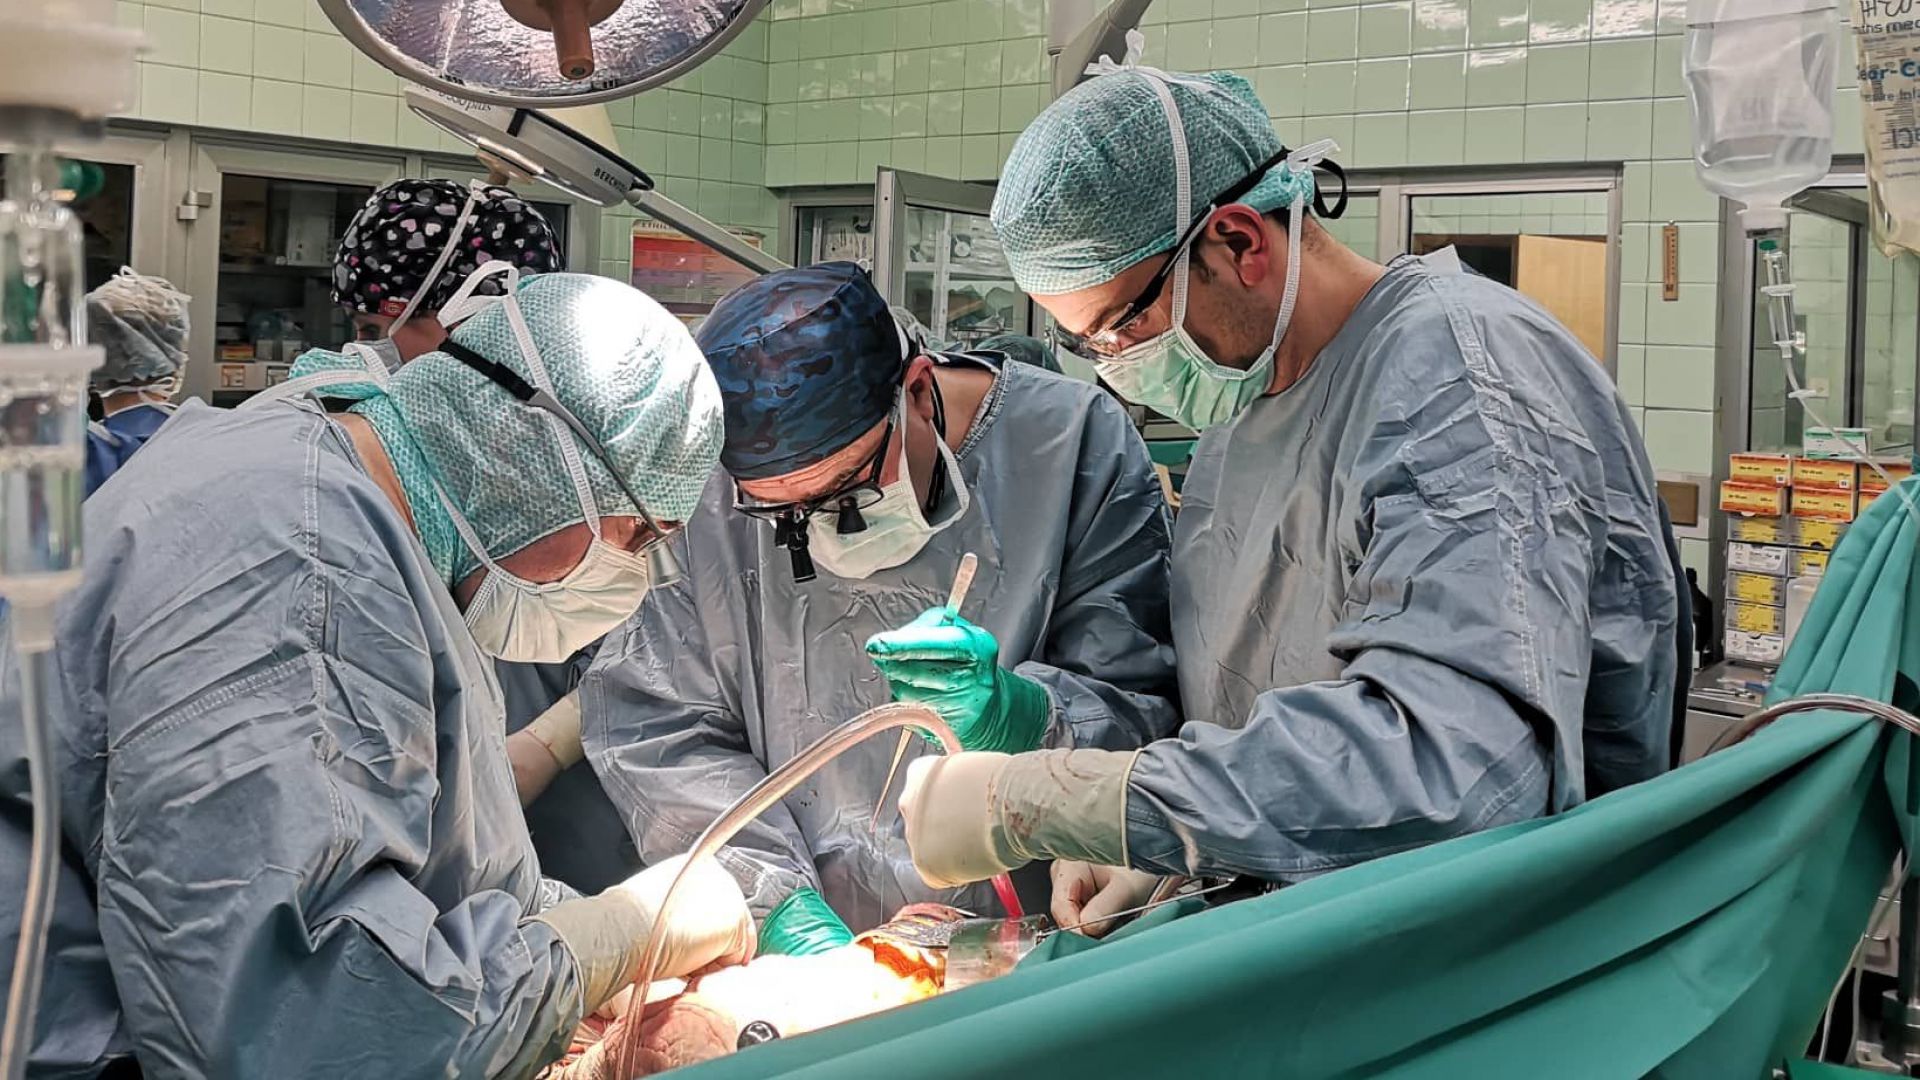 Във ВМА спасиха мъж с уникална чернодробна трансплантация